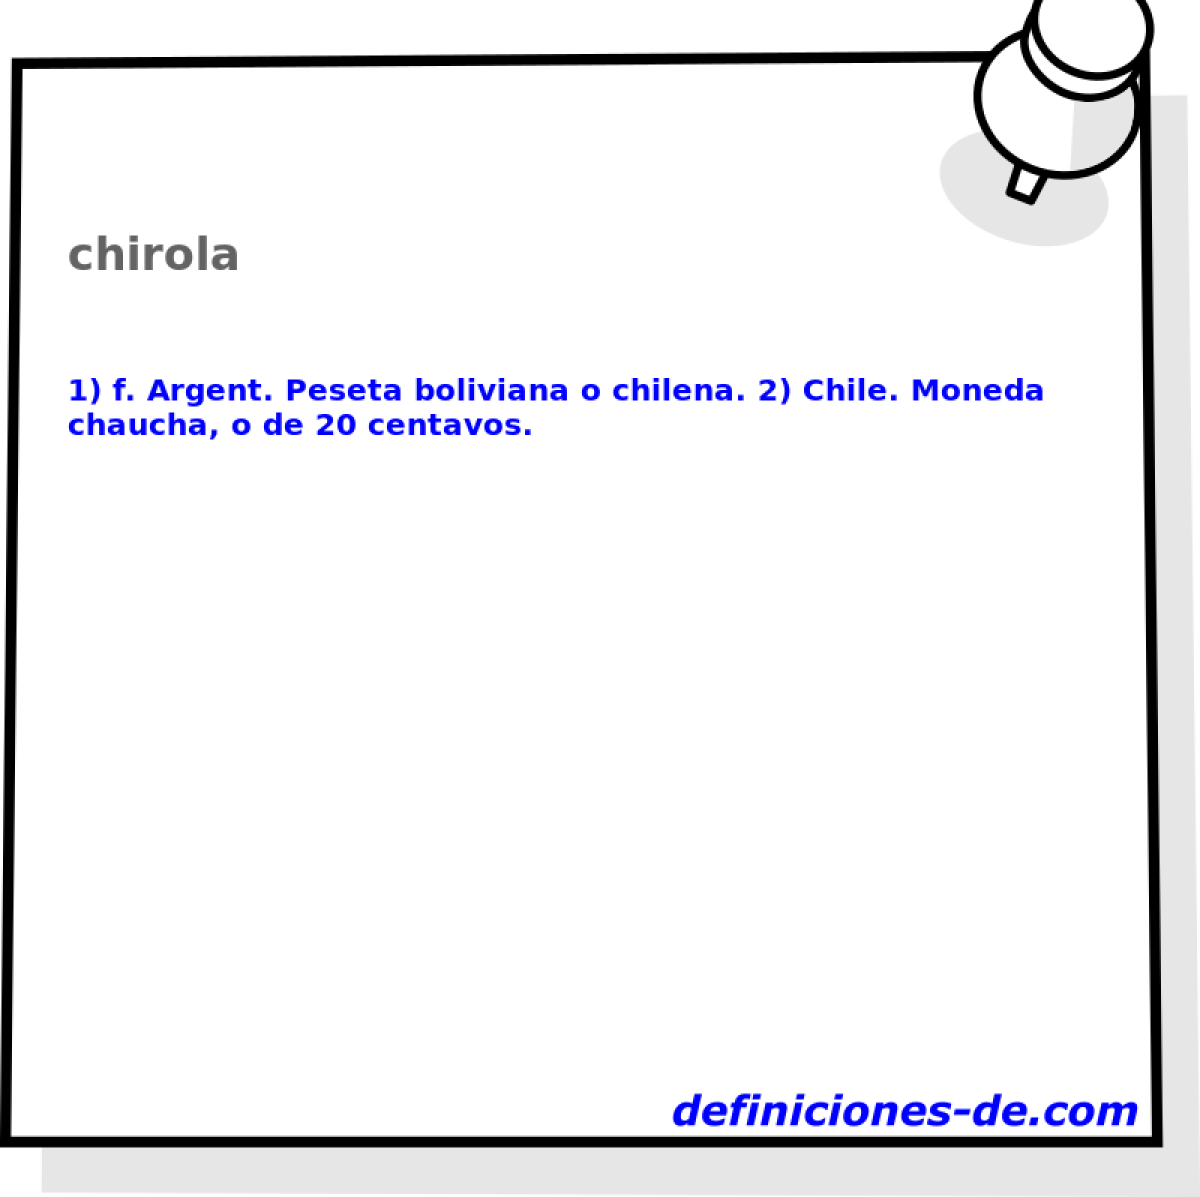 chirola 